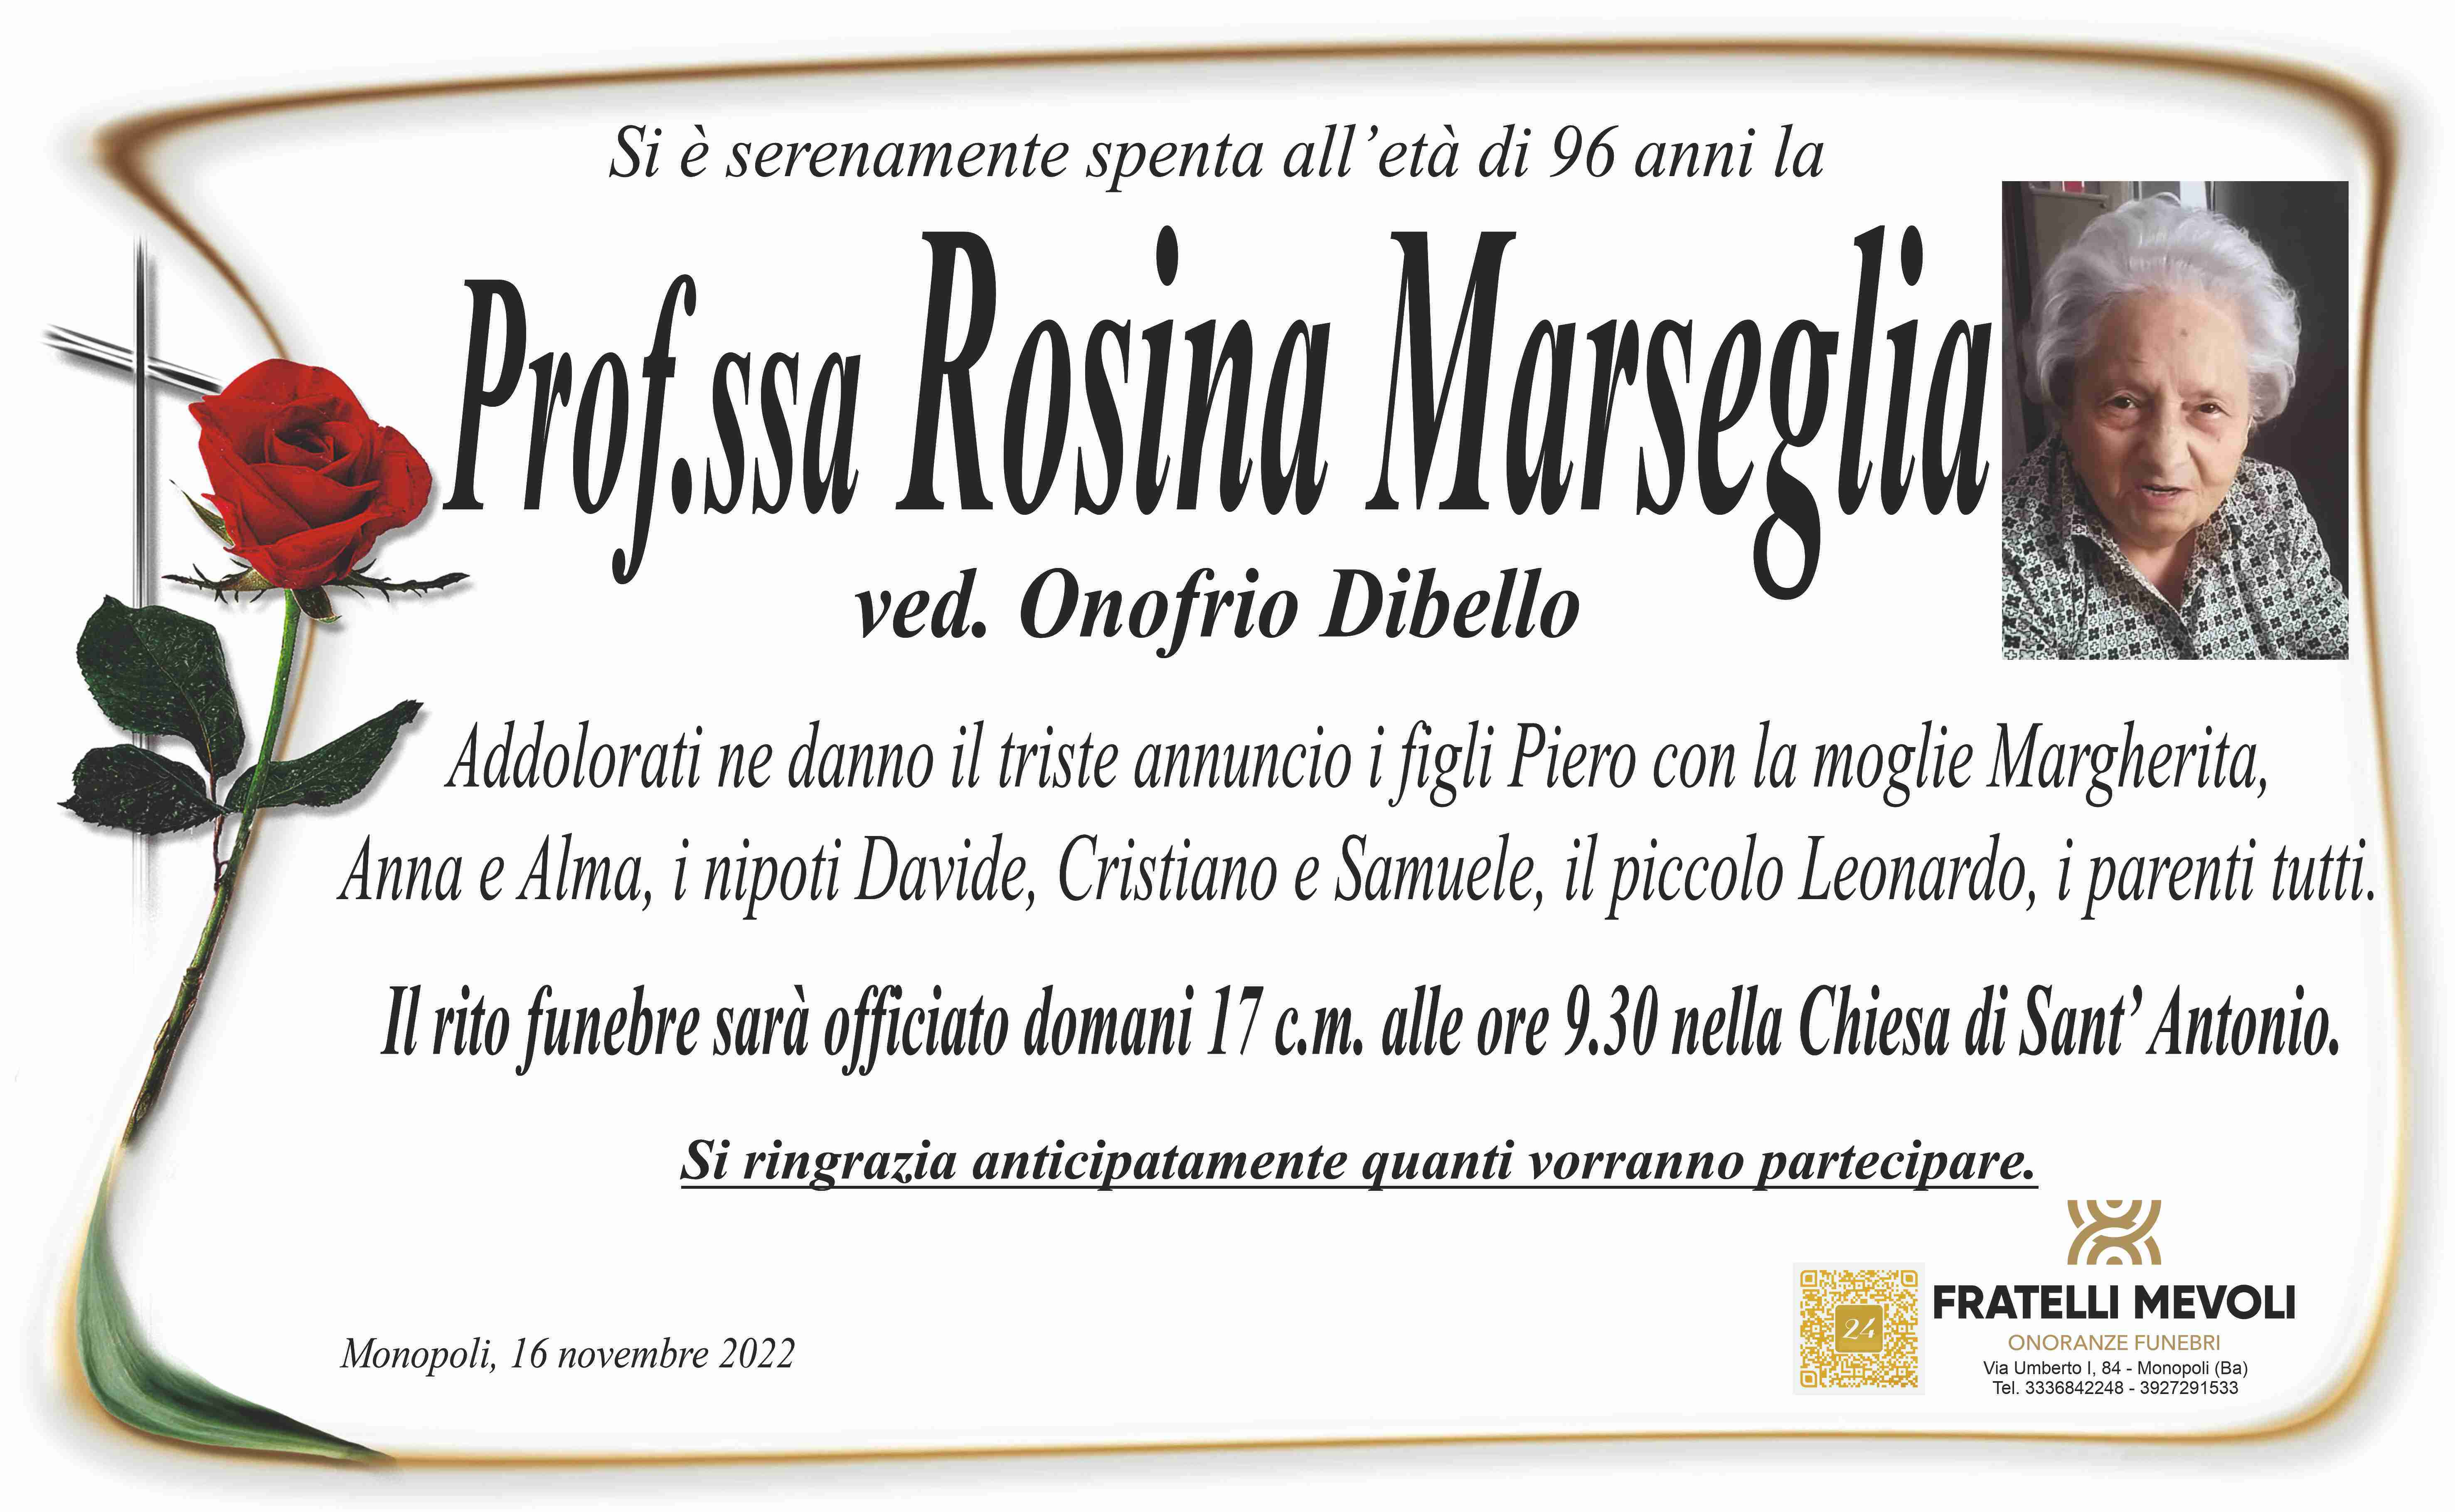 Rosina Marseglia